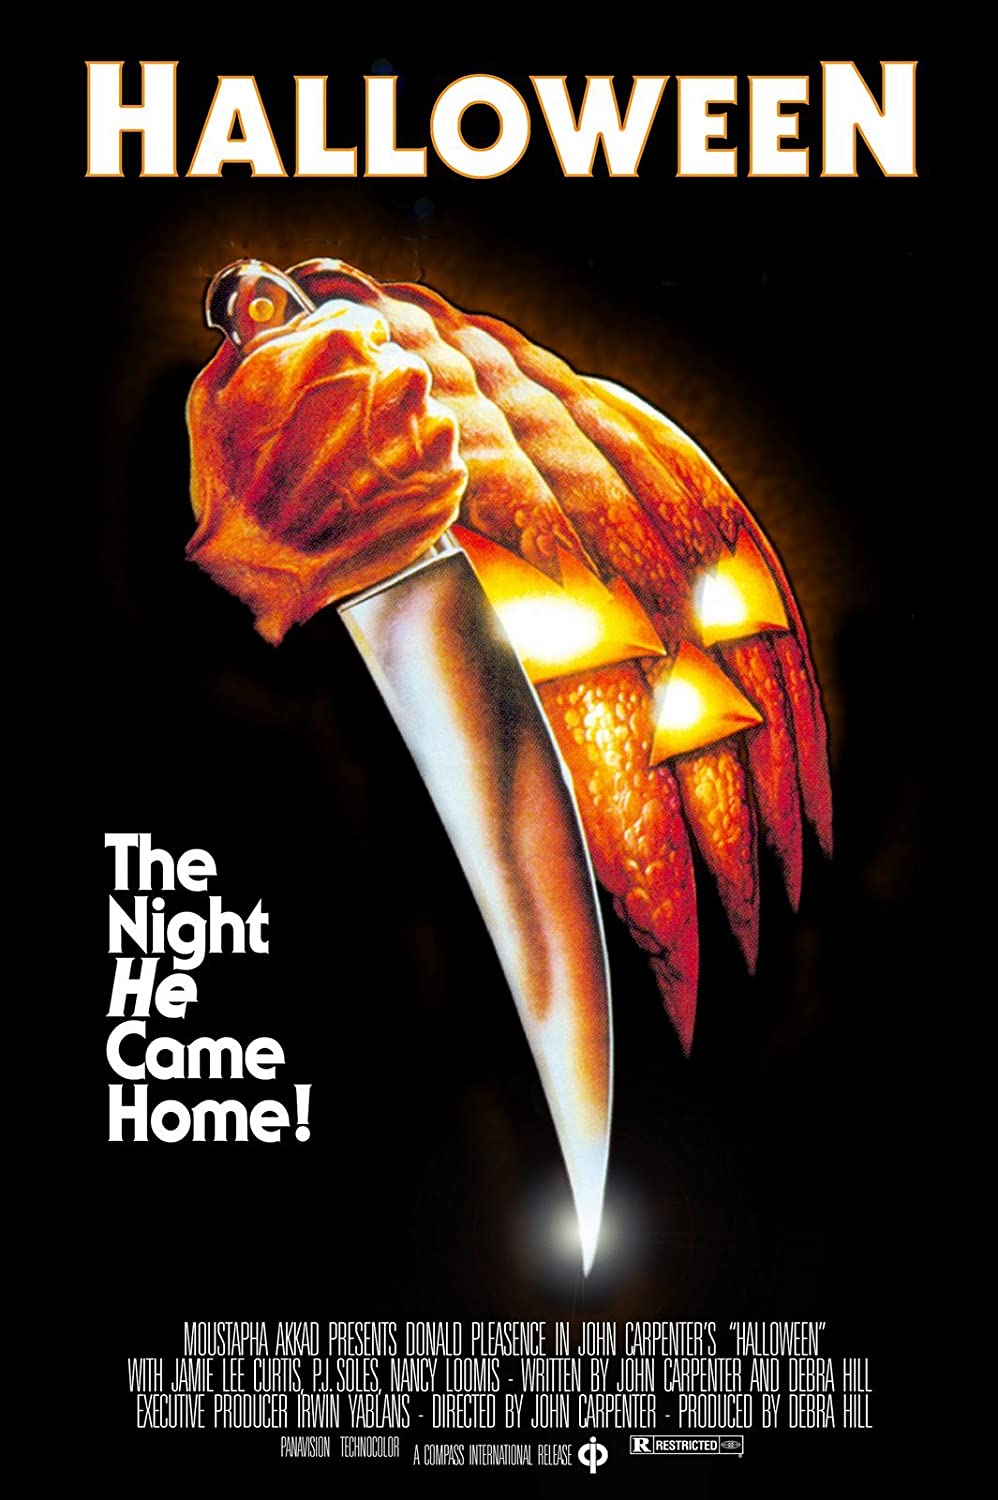 Halloween: 6 filmes de terror imperdíveis para assistir no Dia das